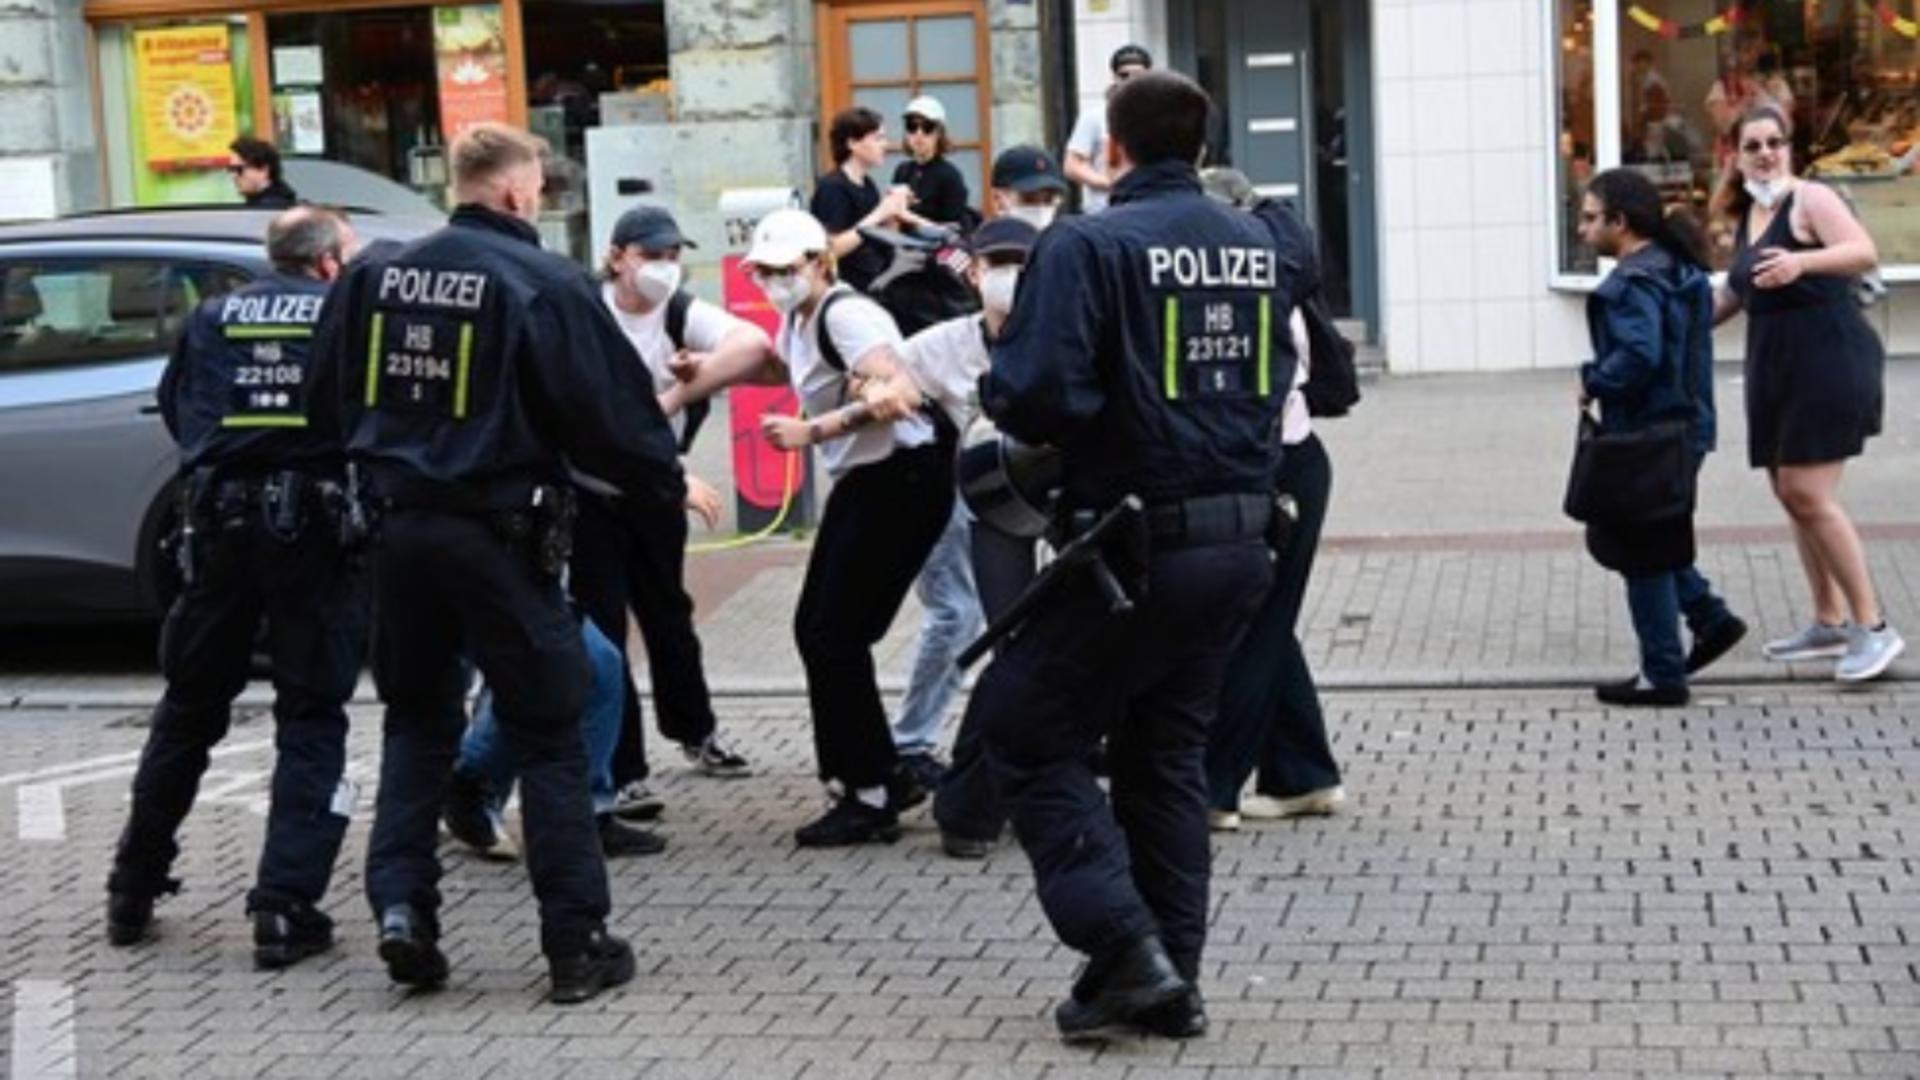 Bătaie între poliţie şi protestari, în Germania. Foto: Profimedia